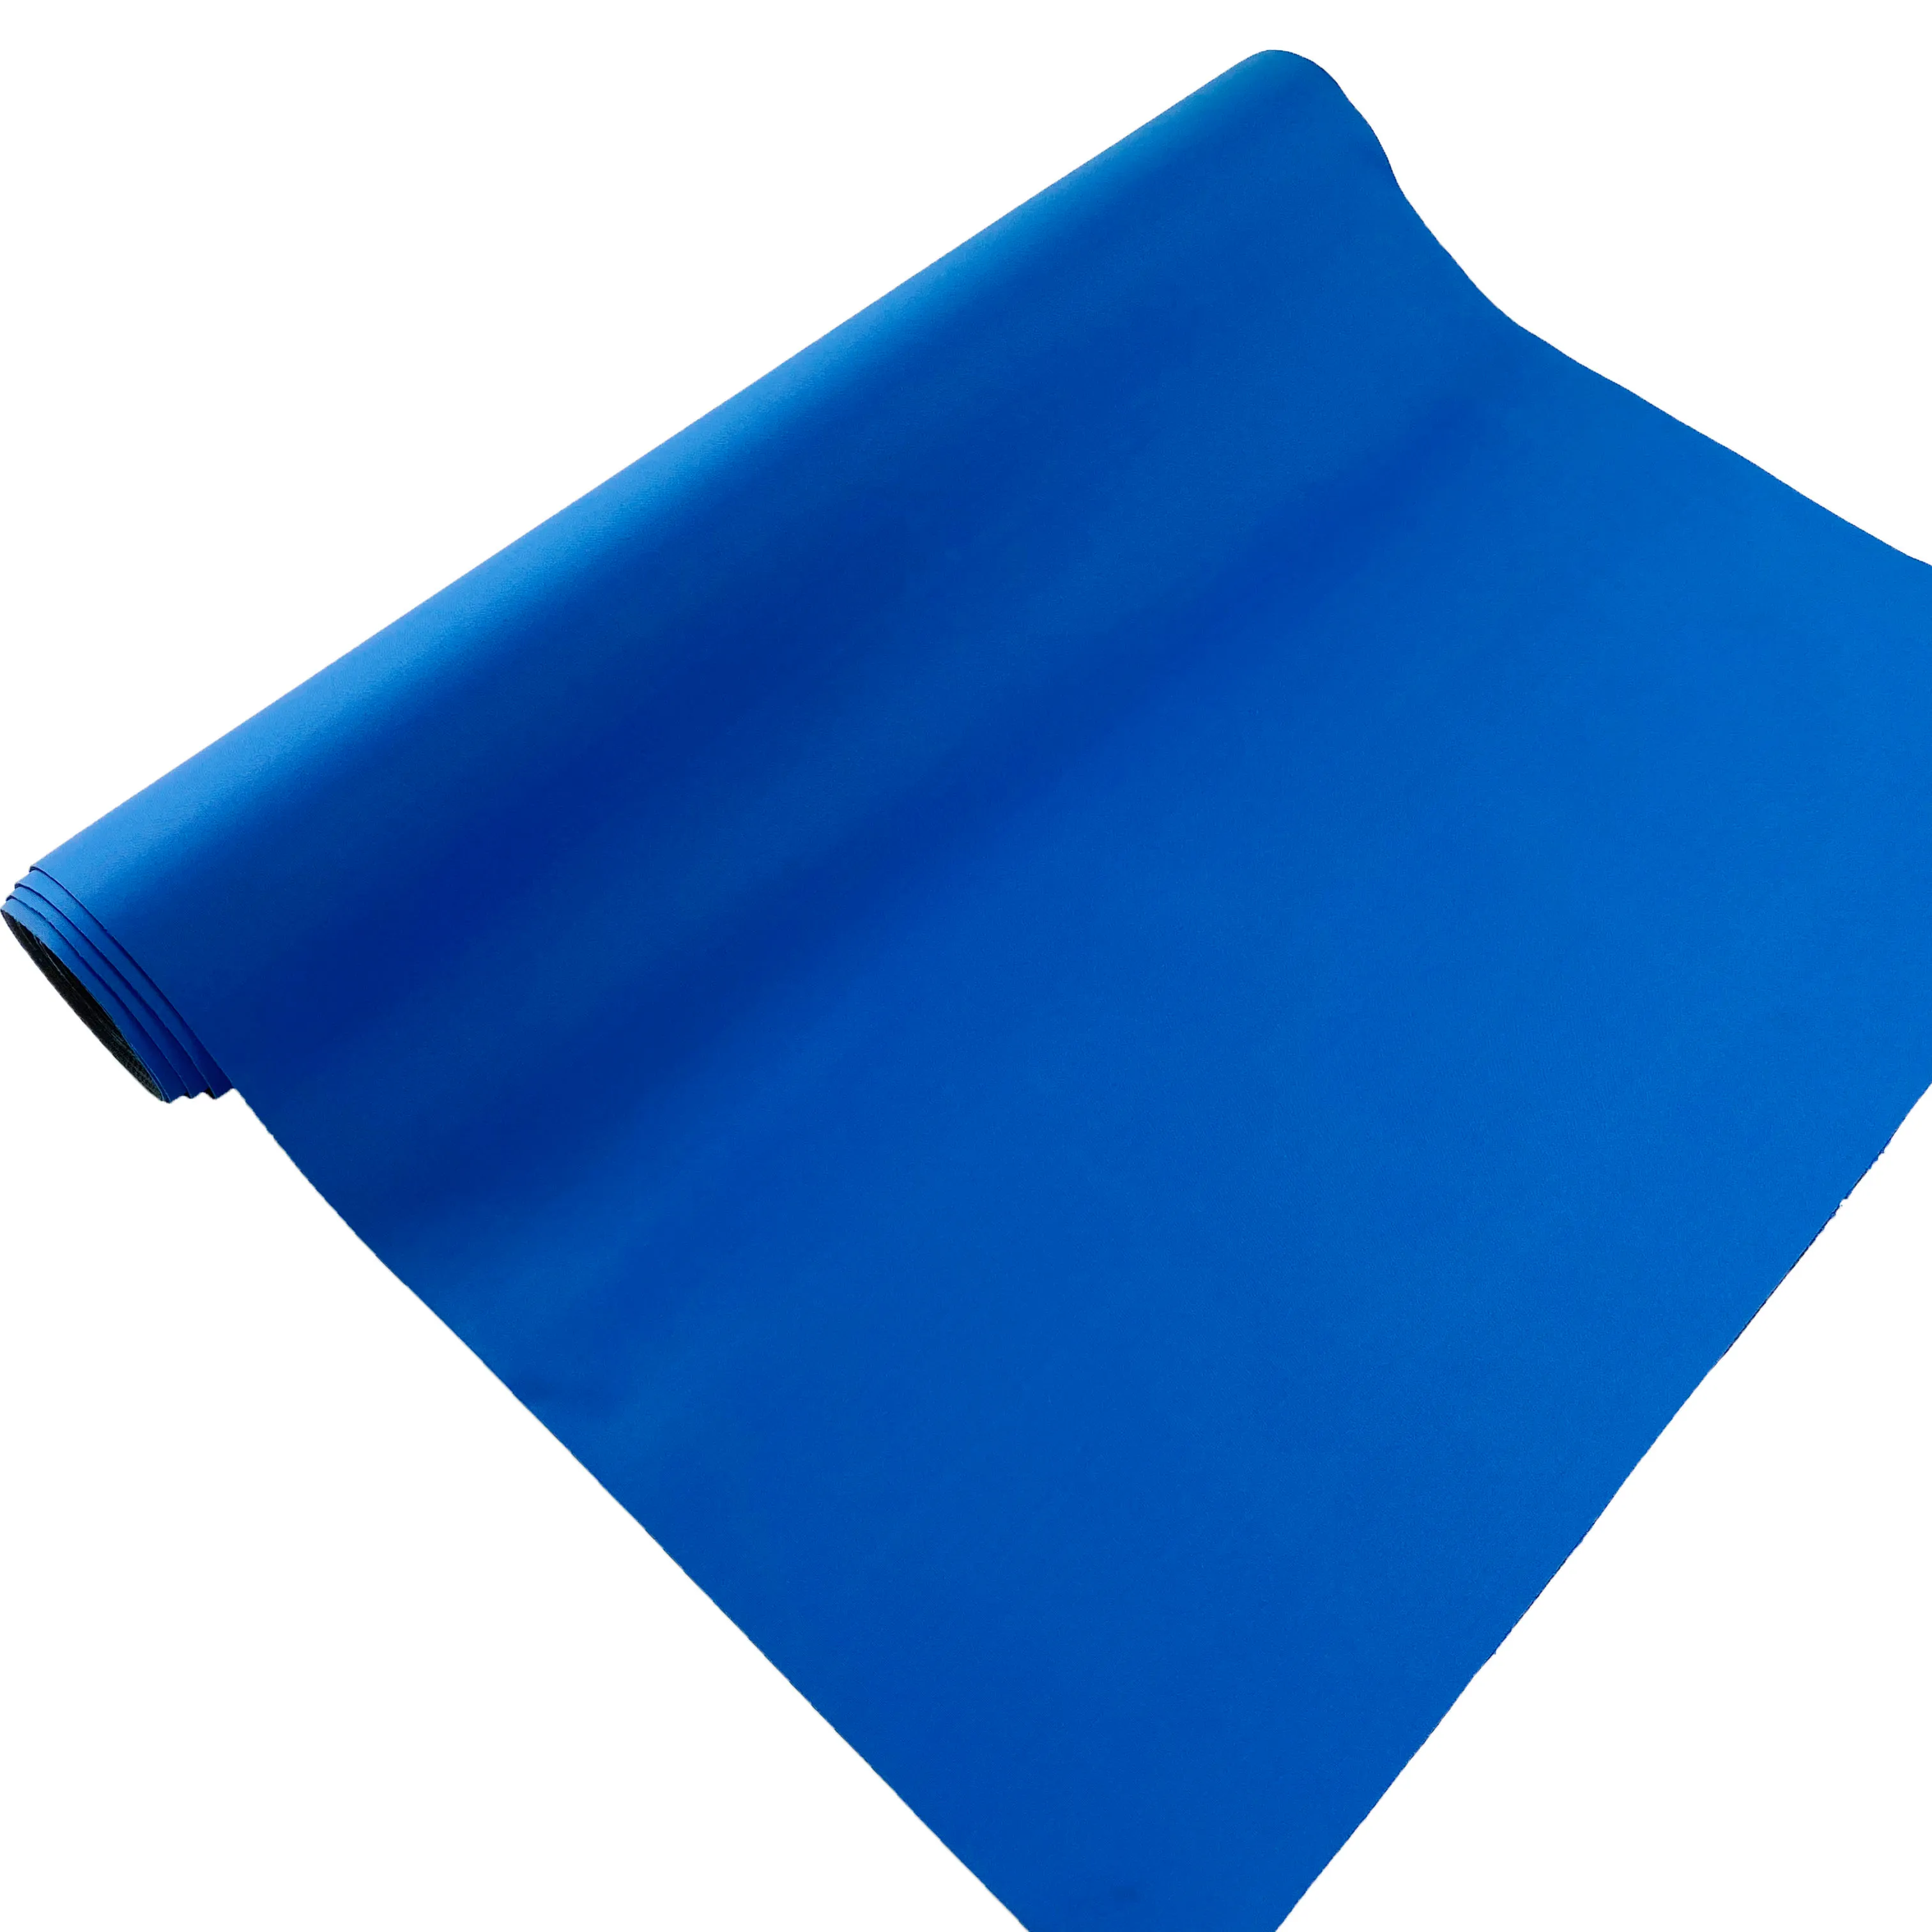 27 дюймов X 15 дюймов X 1,5 мм, синяя Неопреновая напольная дорожка для защиты ковров, линолеума, плитки, ламината